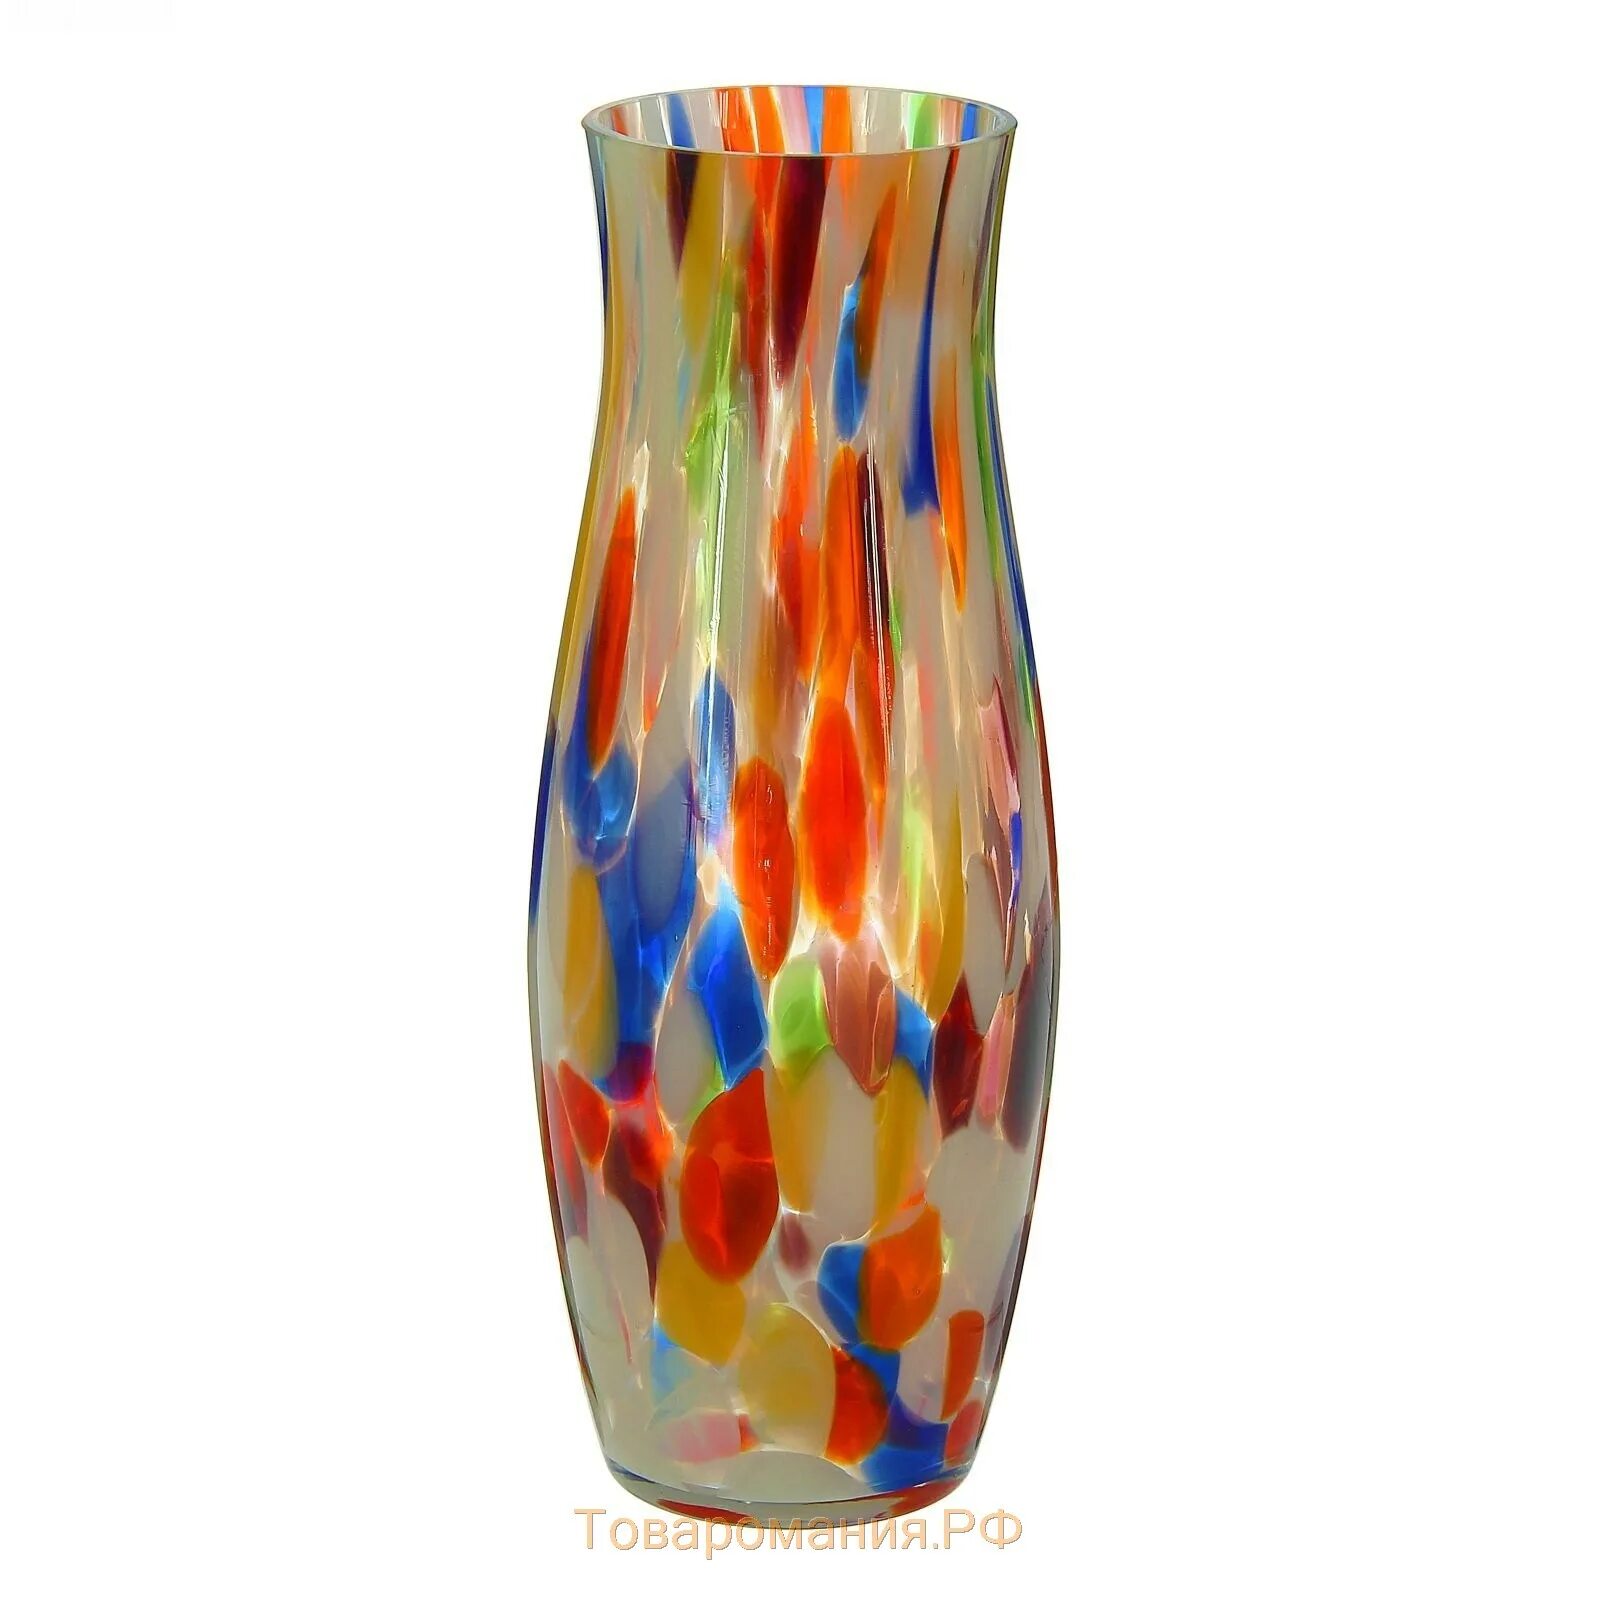 Цветной ваза. Ваза Гранд стекло 2304 НСК. 8268/260/Lk309 ваза (кувшин) стекло h260 декор.. Ваза из цветного стекла. Вазы цветное стекло.